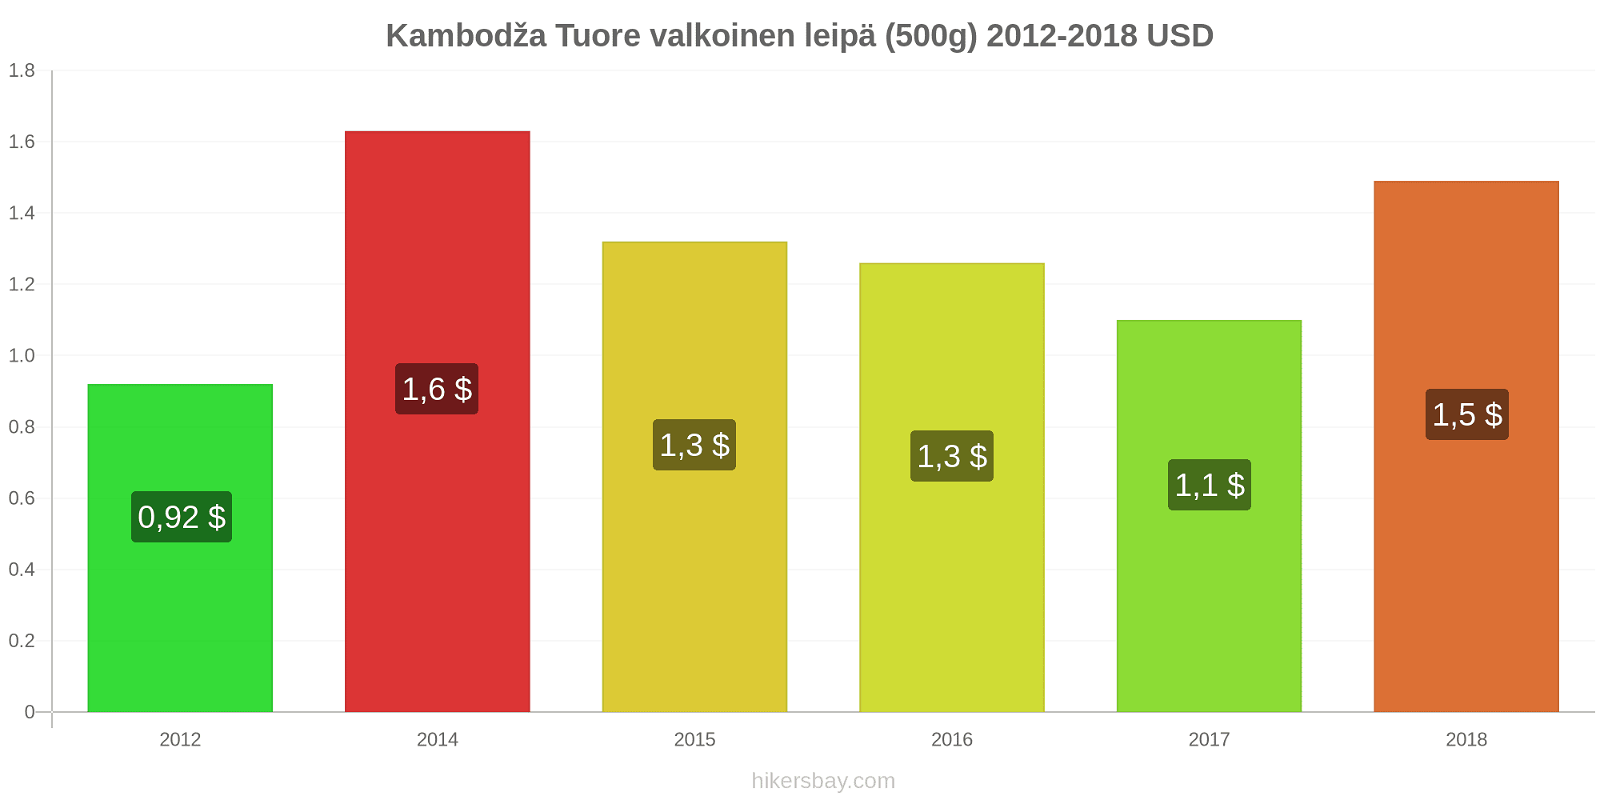 Kambodža hintojen muutokset Tuore valkoinen leipä (500g) hikersbay.com